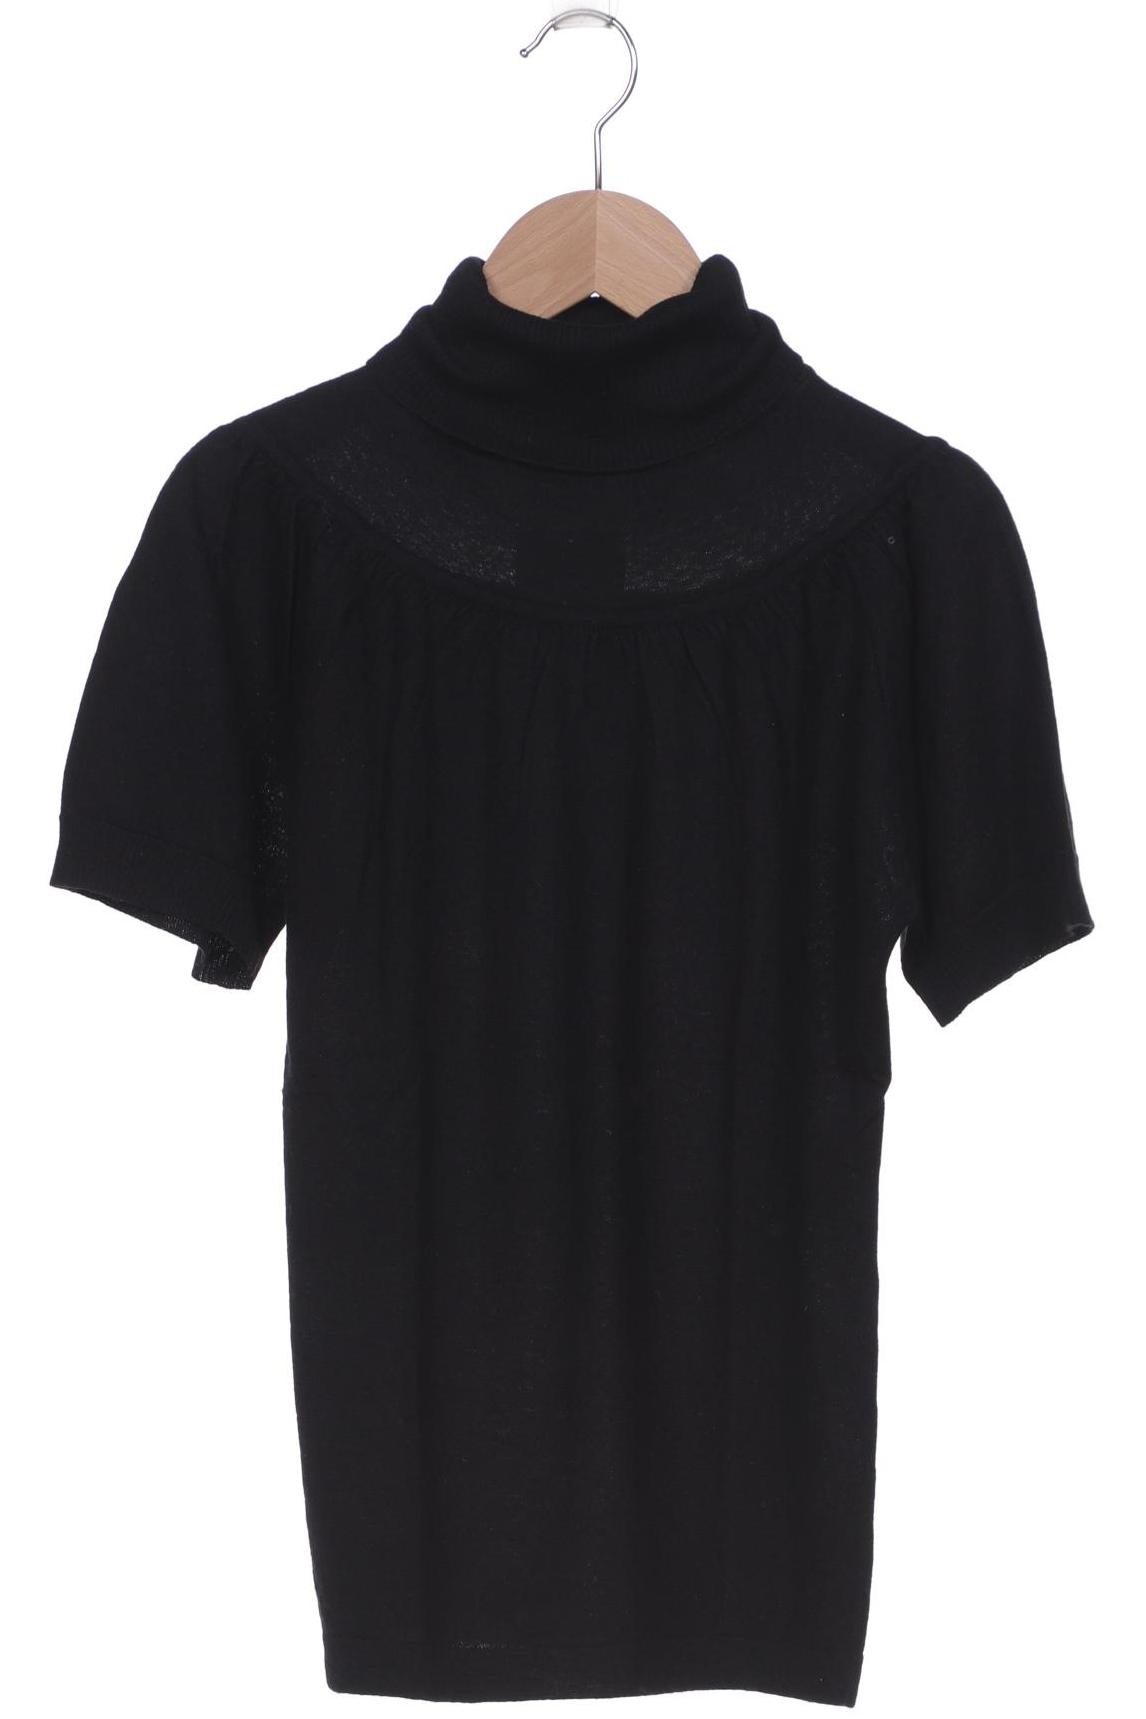 St.Emile Damen T-Shirt, schwarz, Gr. 36 von St.Emile